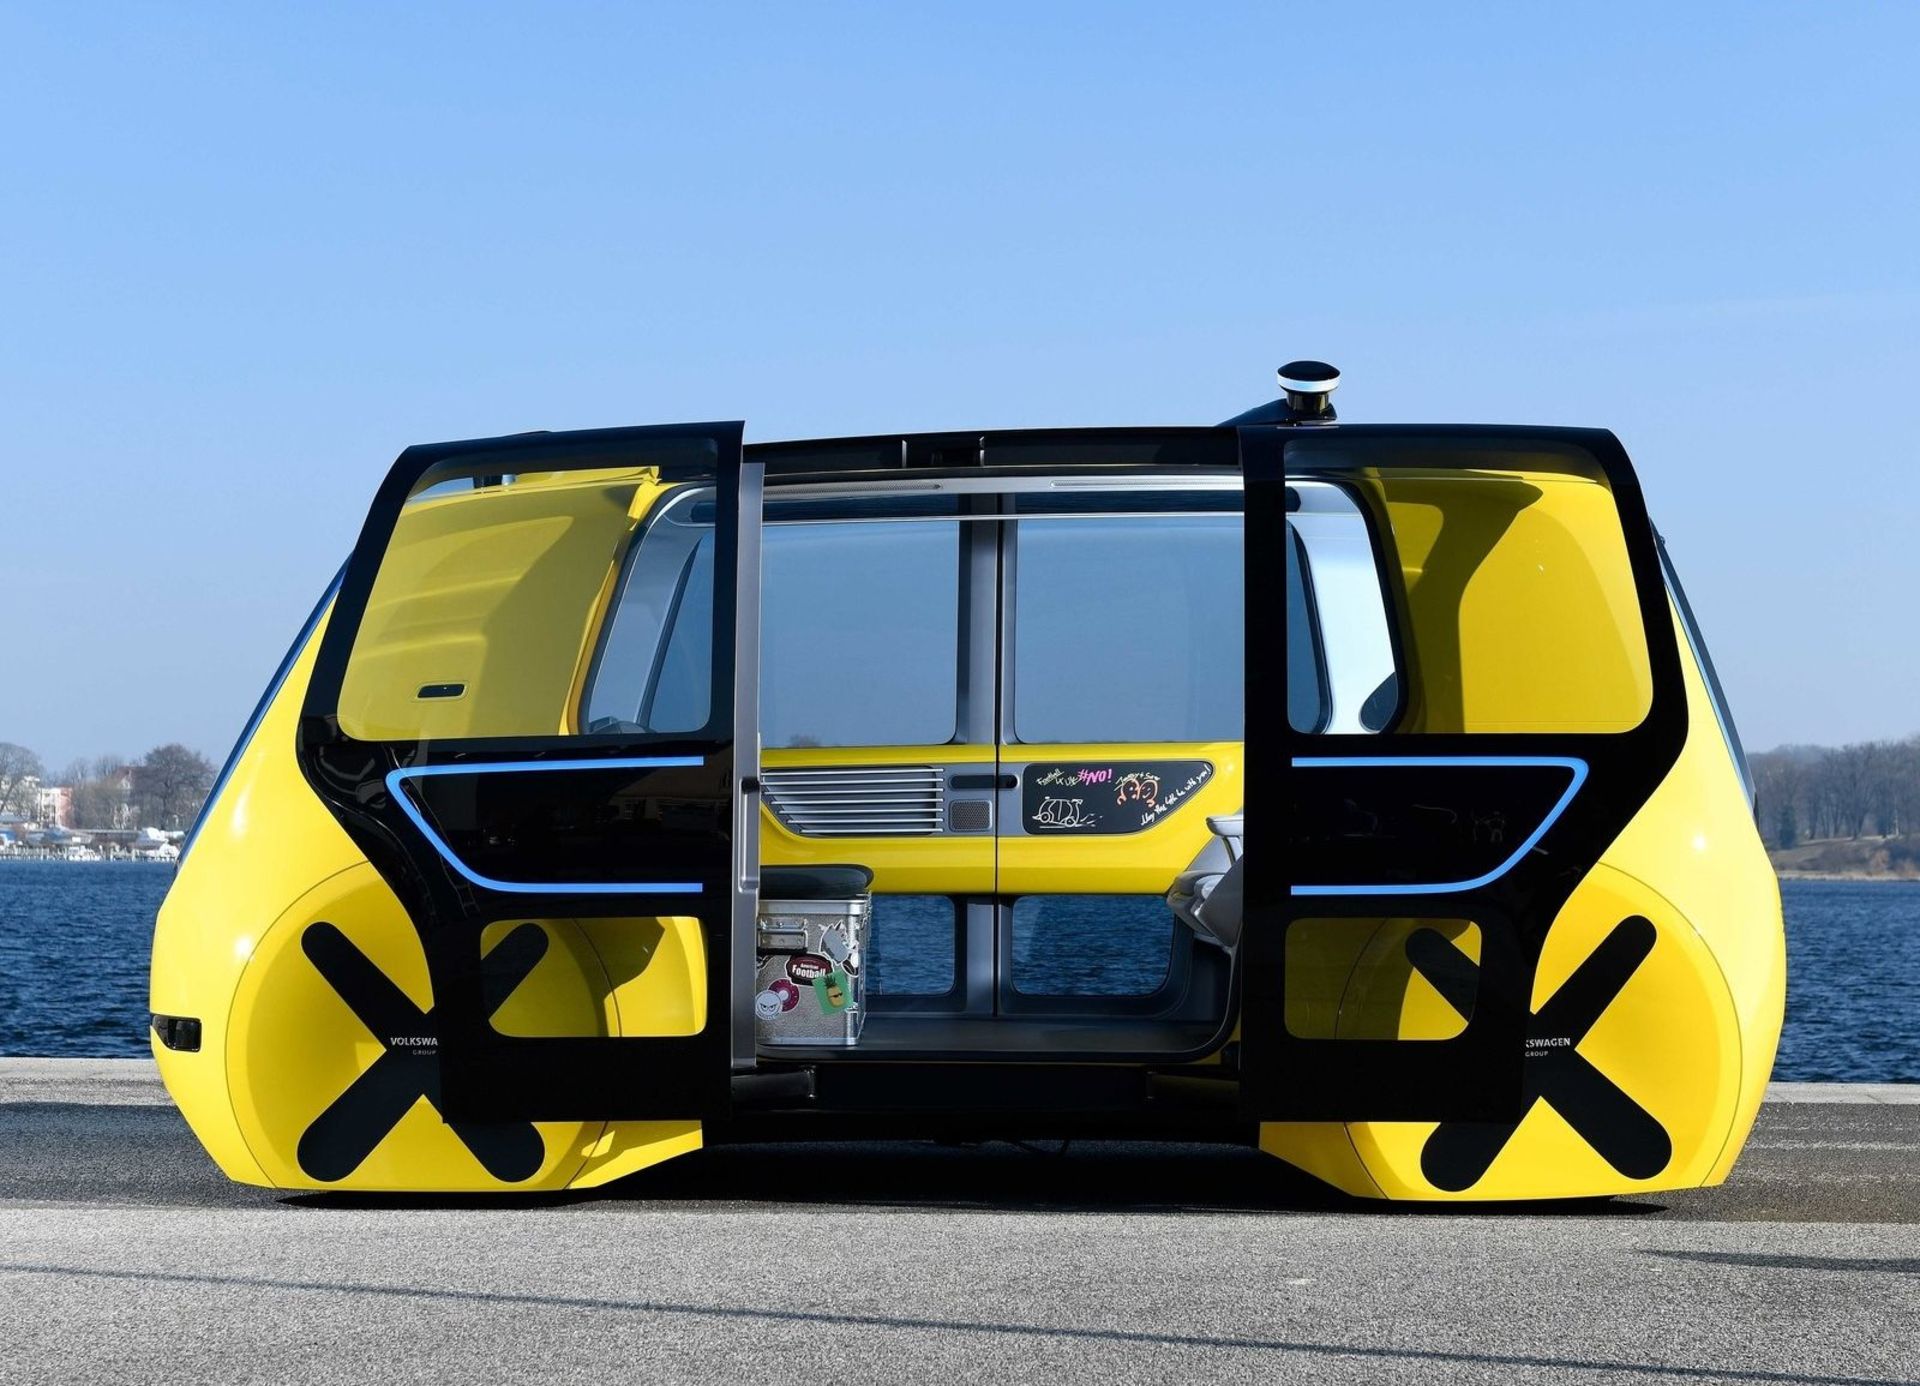 Volkswagen Sedric School Bus Concept